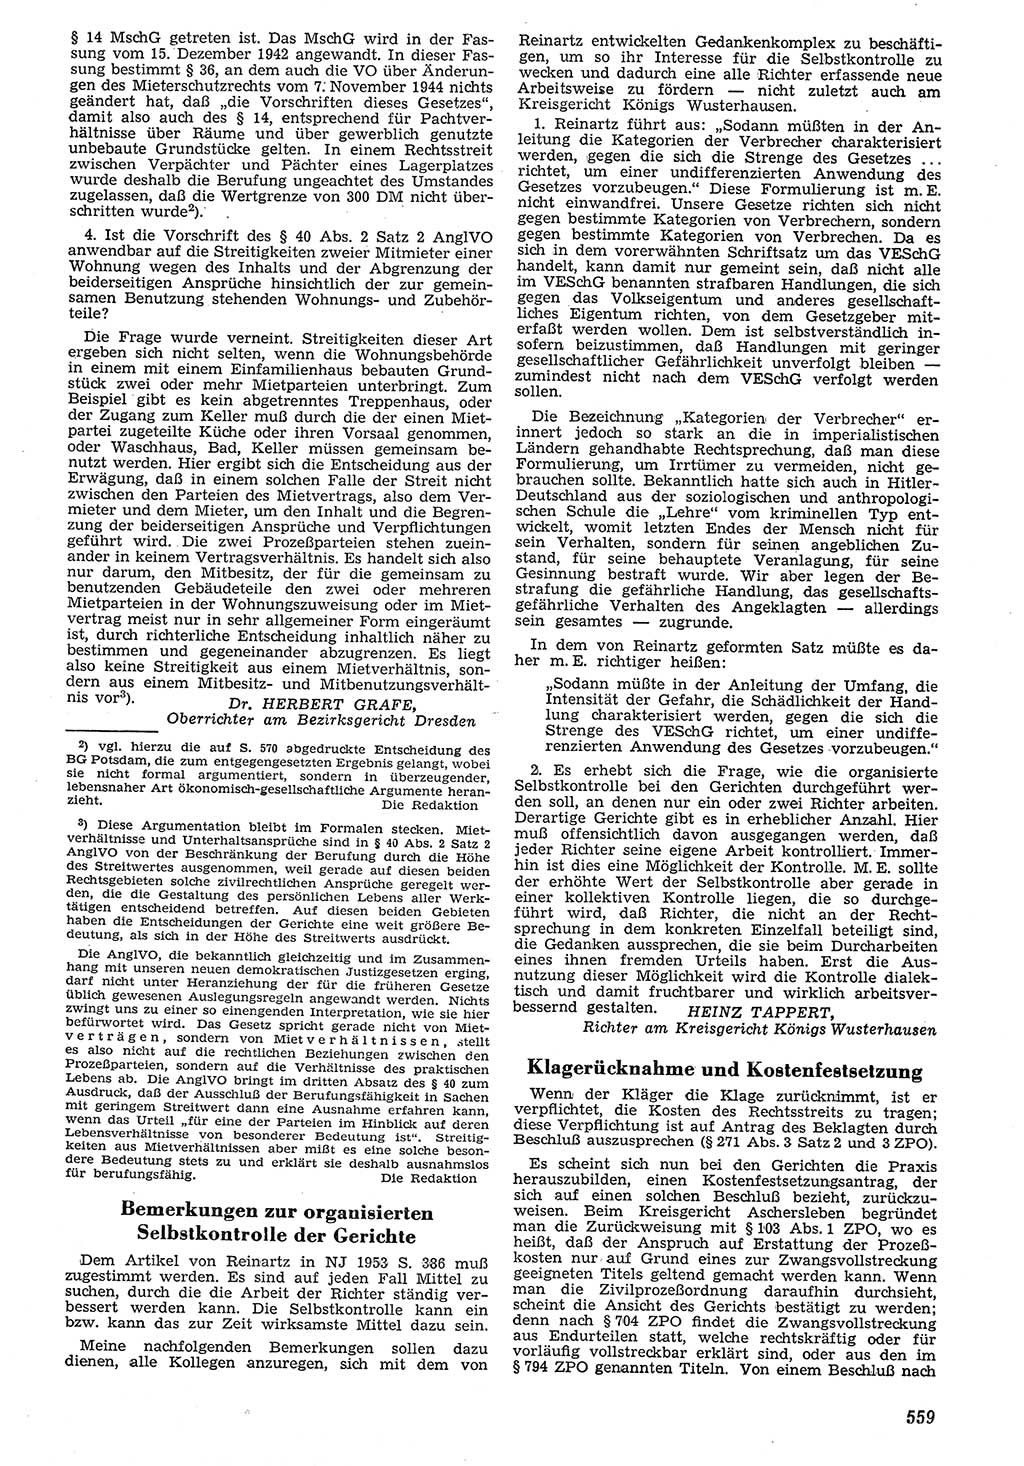 Neue Justiz (NJ), Zeitschrift für Recht und Rechtswissenschaft [Deutsche Demokratische Republik (DDR)], 7. Jahrgang 1953, Seite 559 (NJ DDR 1953, S. 559)